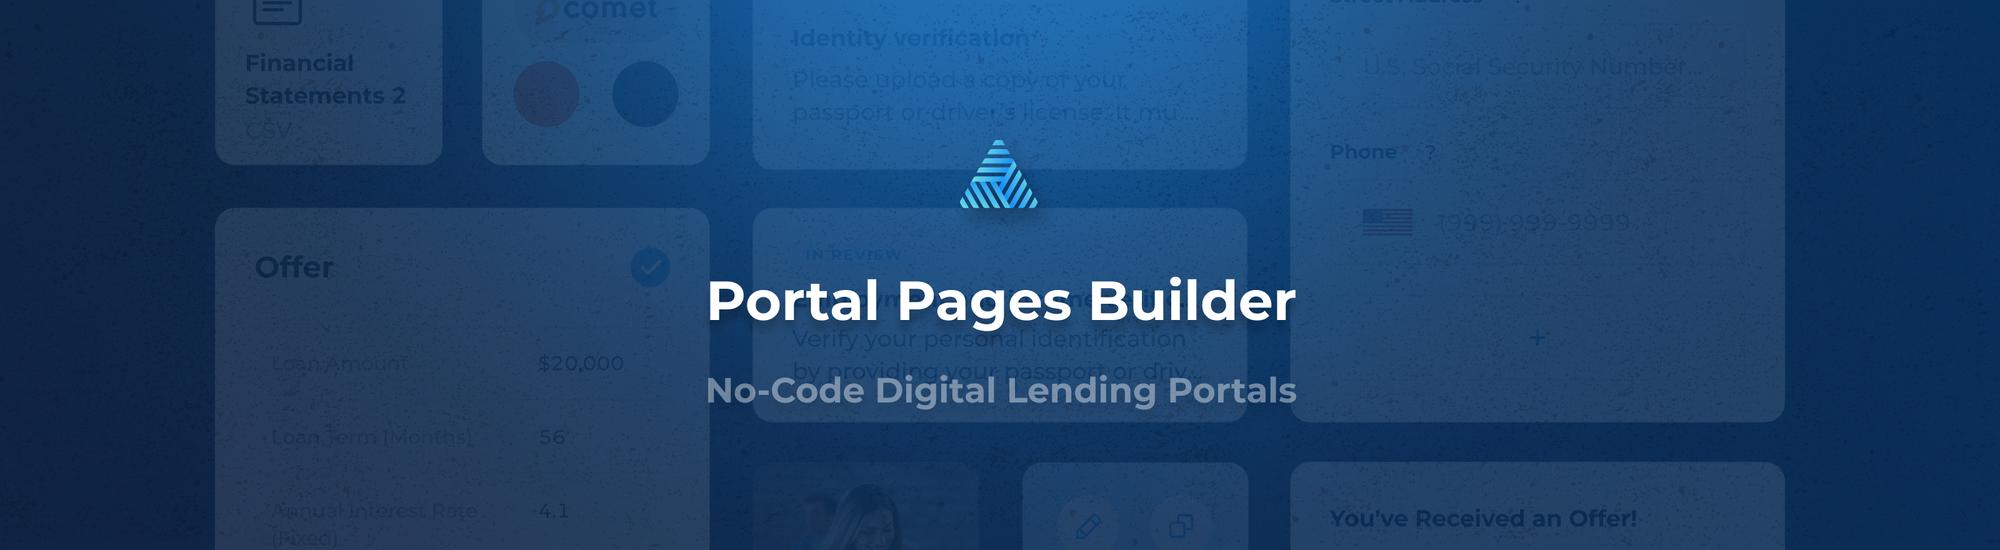 Portal Pages Builder: Your No-Code Digital Lending Portal